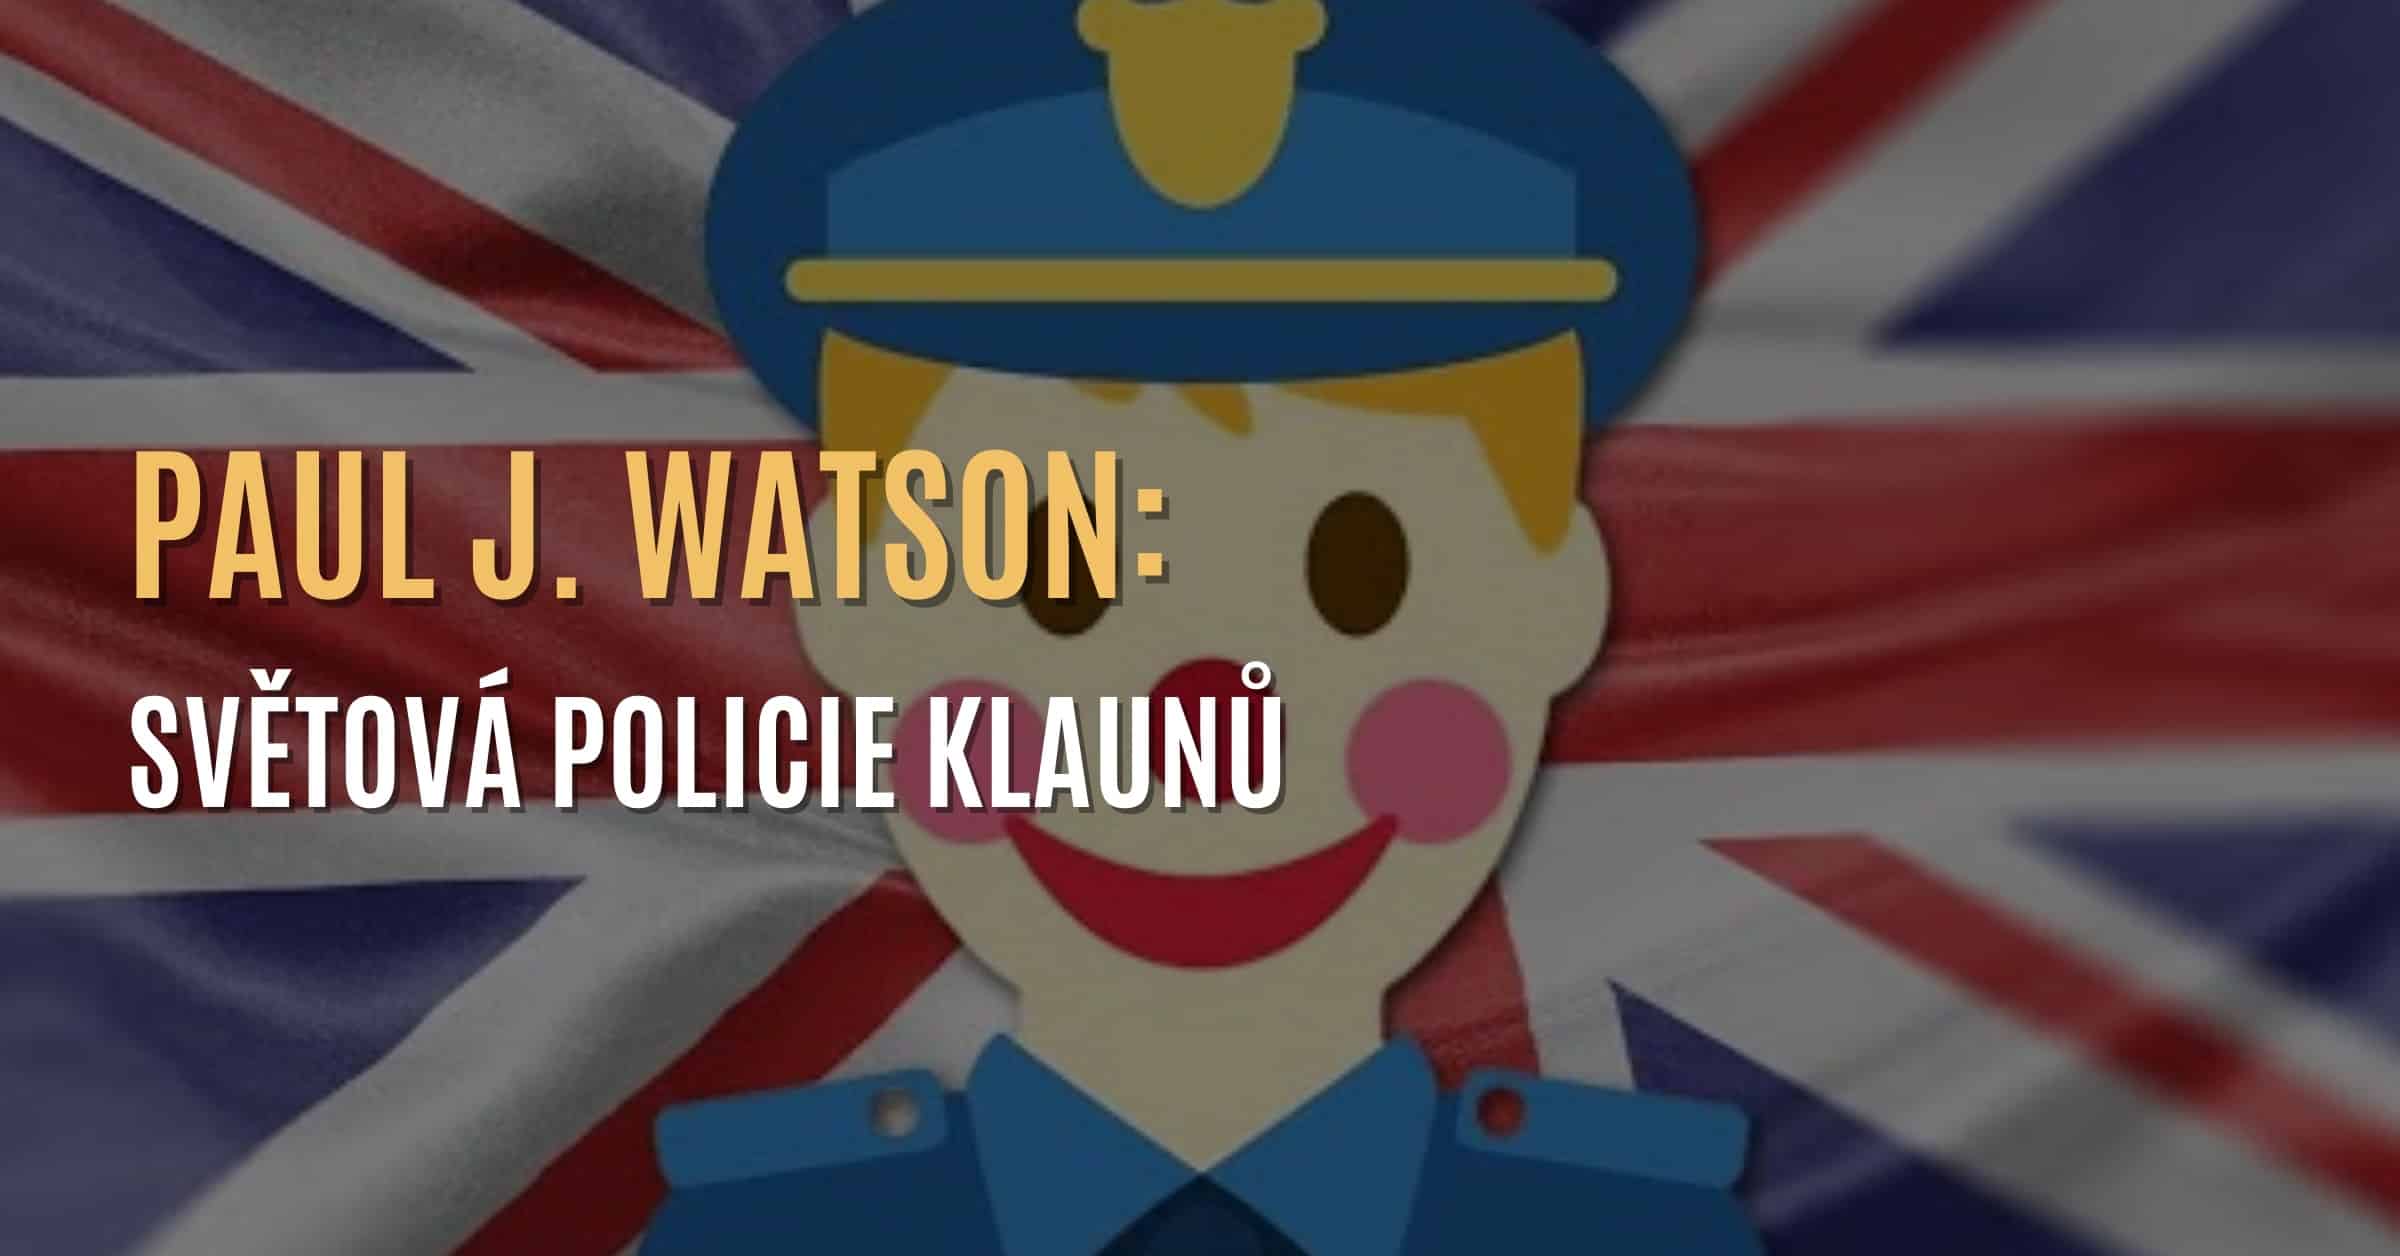 Paul J. Watson: Světová policie klaunů